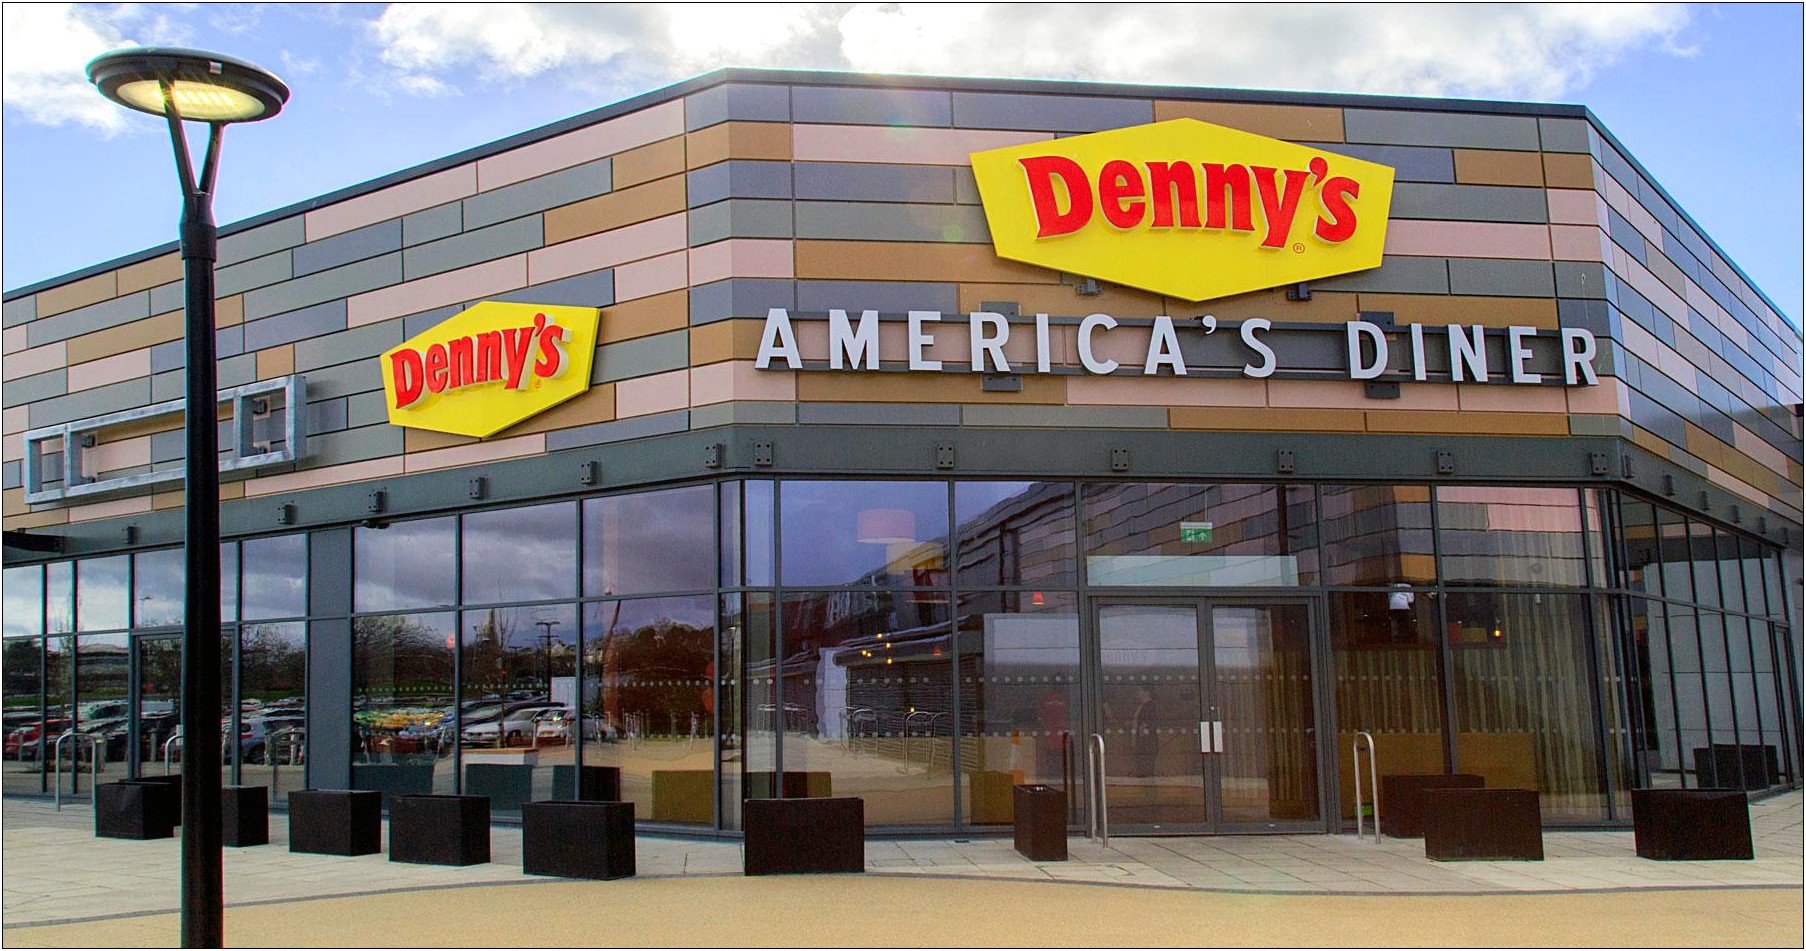 Denny's Diner Waiter Resume Description